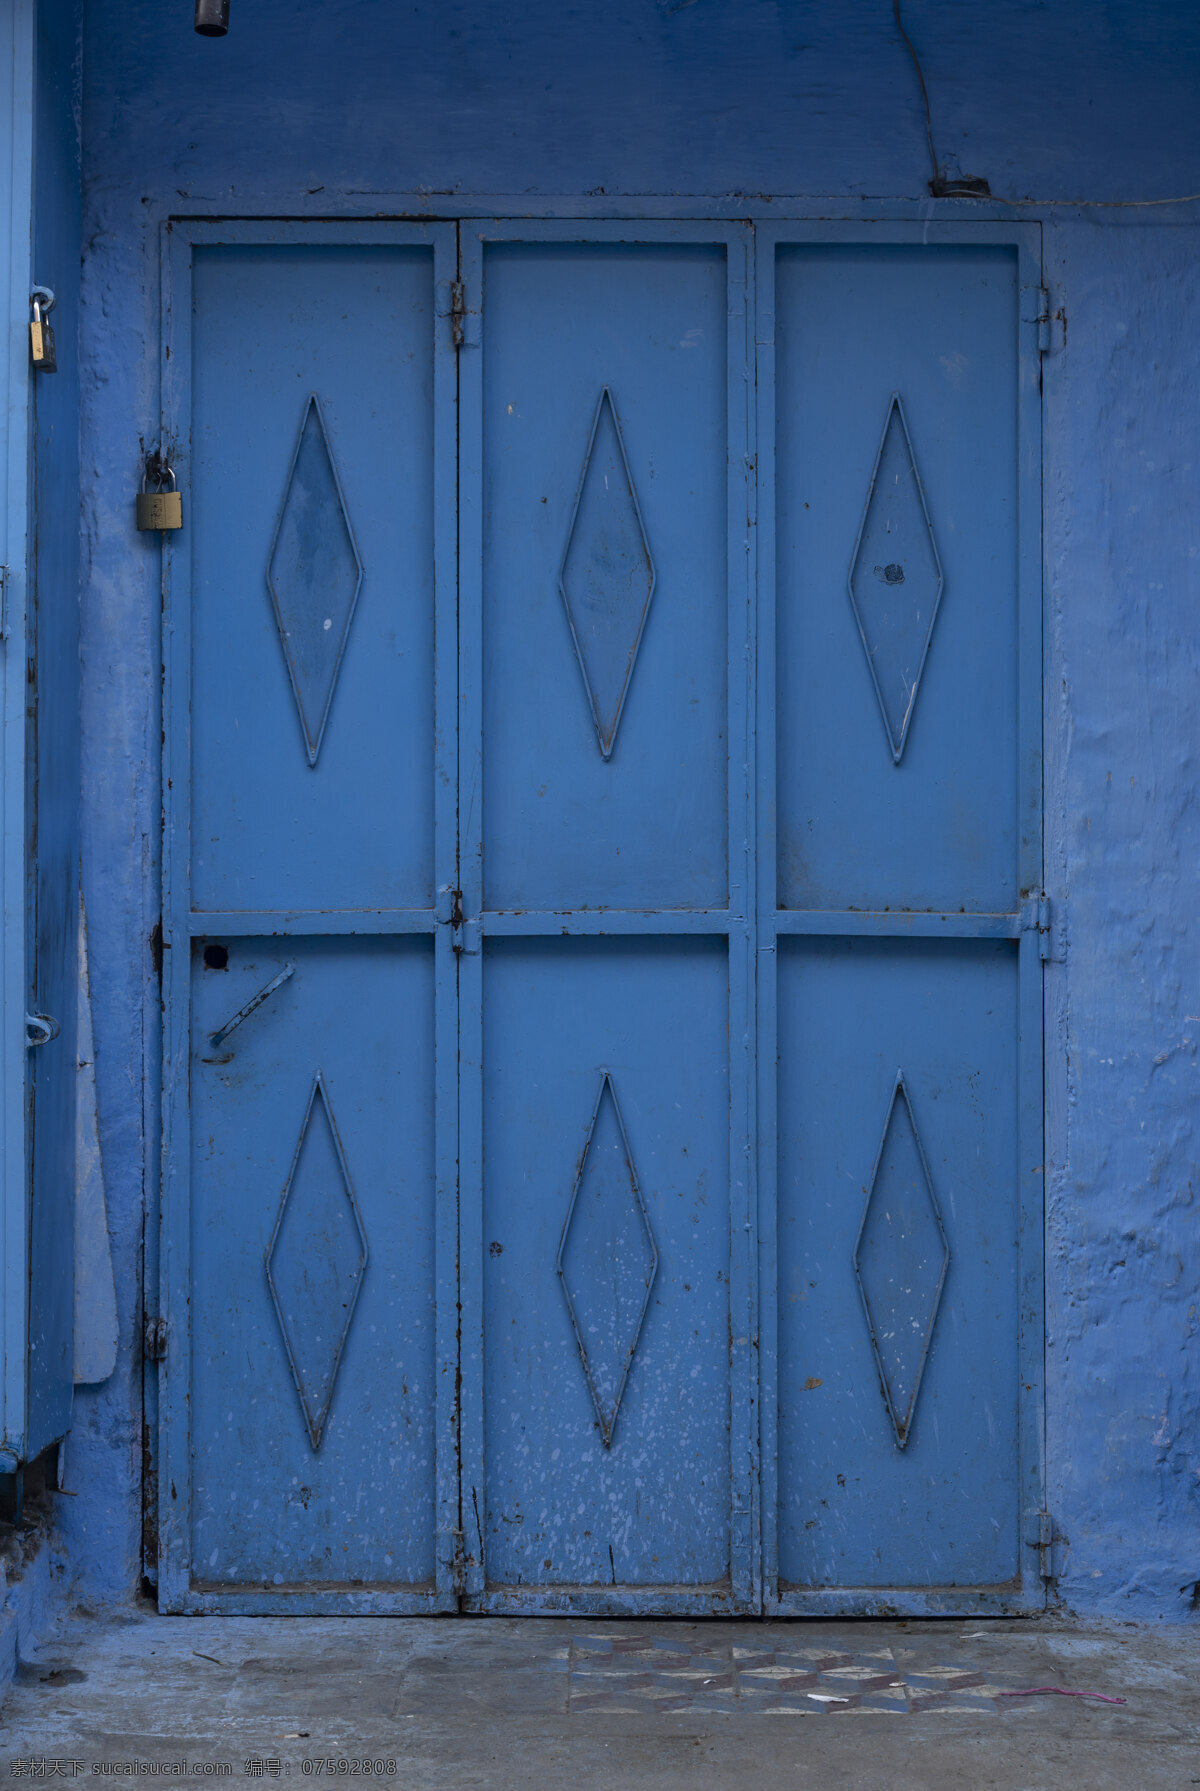 铁门 门 摩洛哥 蓝色 摩洛哥小镇 摩洛哥风格 摩洛哥建筑 摩洛哥风景 门造型 门的造型 阿拉伯 唯美图片 旅游摄影 国外旅游 旅游 旅行 村庄城镇场景